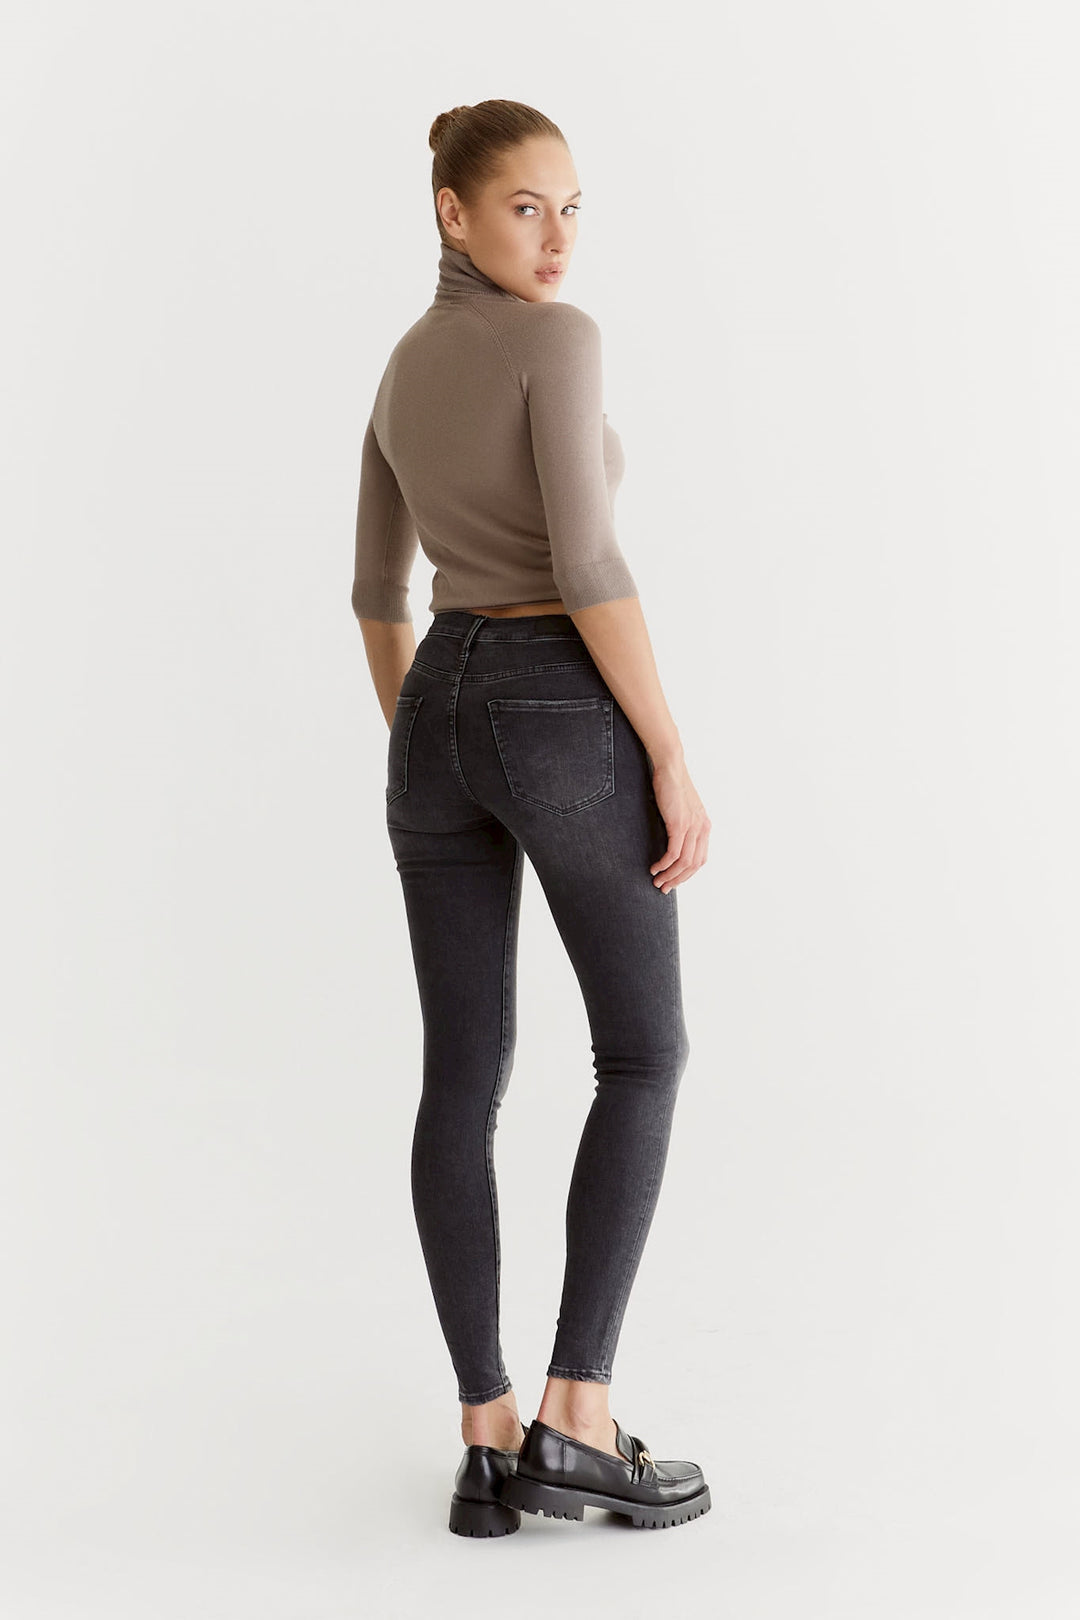 COJ - Sophia - Dames Skinny Jeans - Random Grey